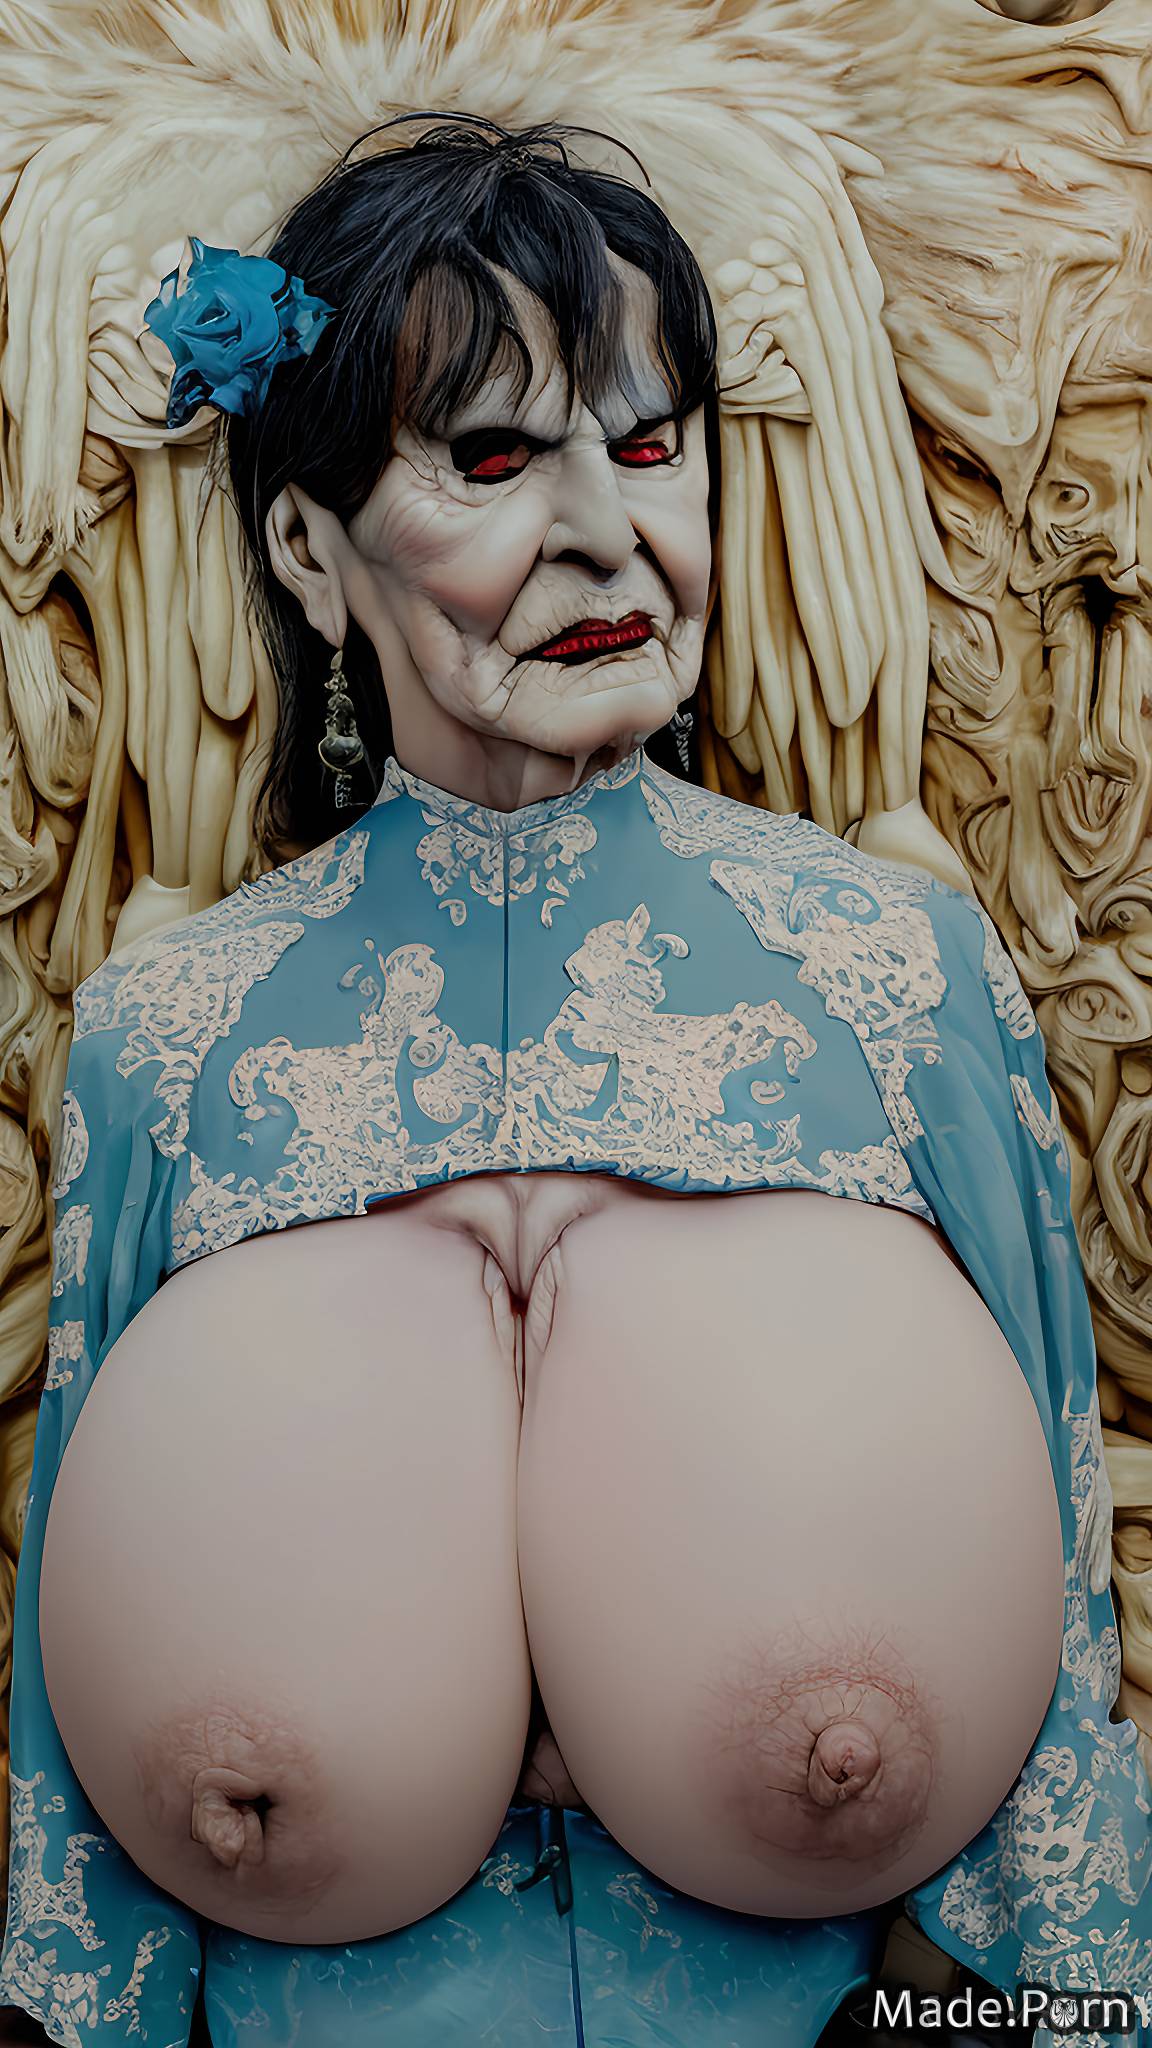 90 surrealism devil lesbian nude topless jewish